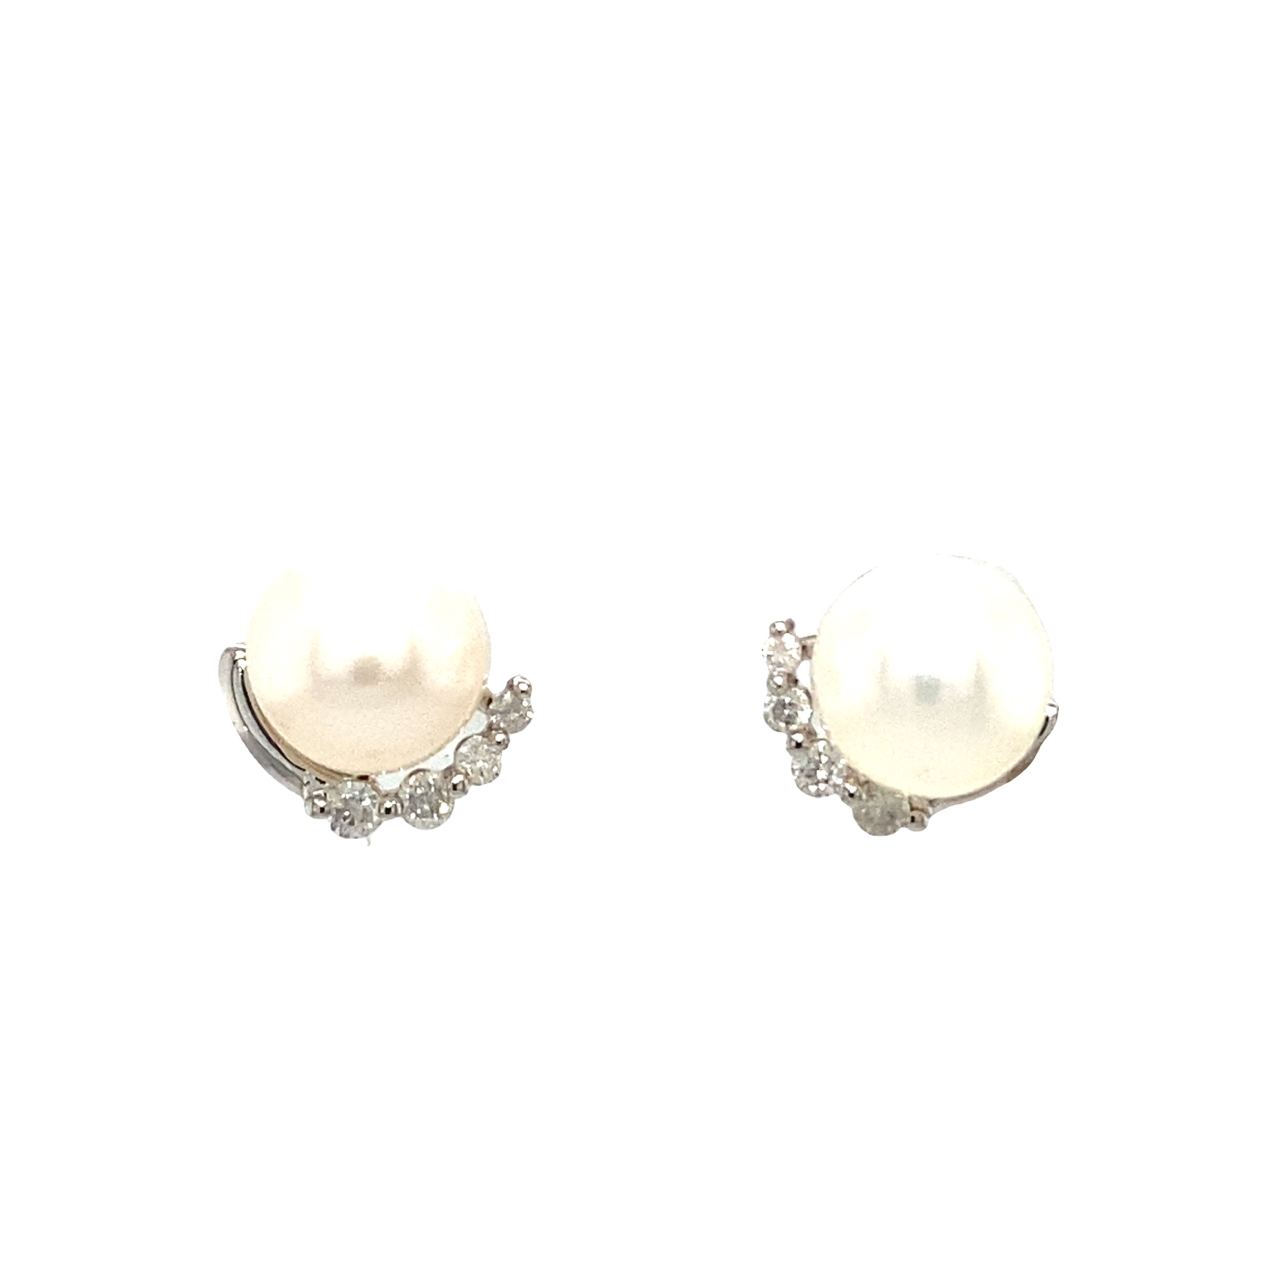 18K White Gold Four Diamond Pearl Earrings